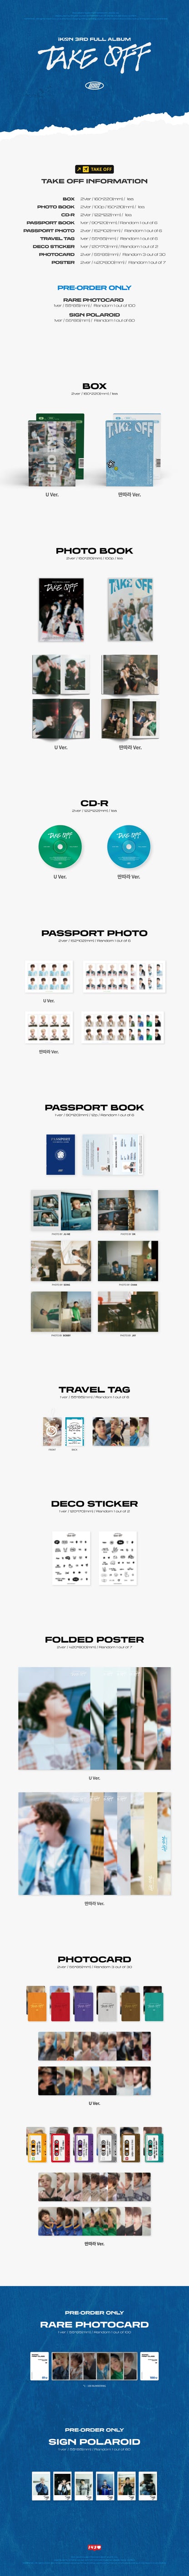 iKON - 3rd Full Album [TAKE OFF]